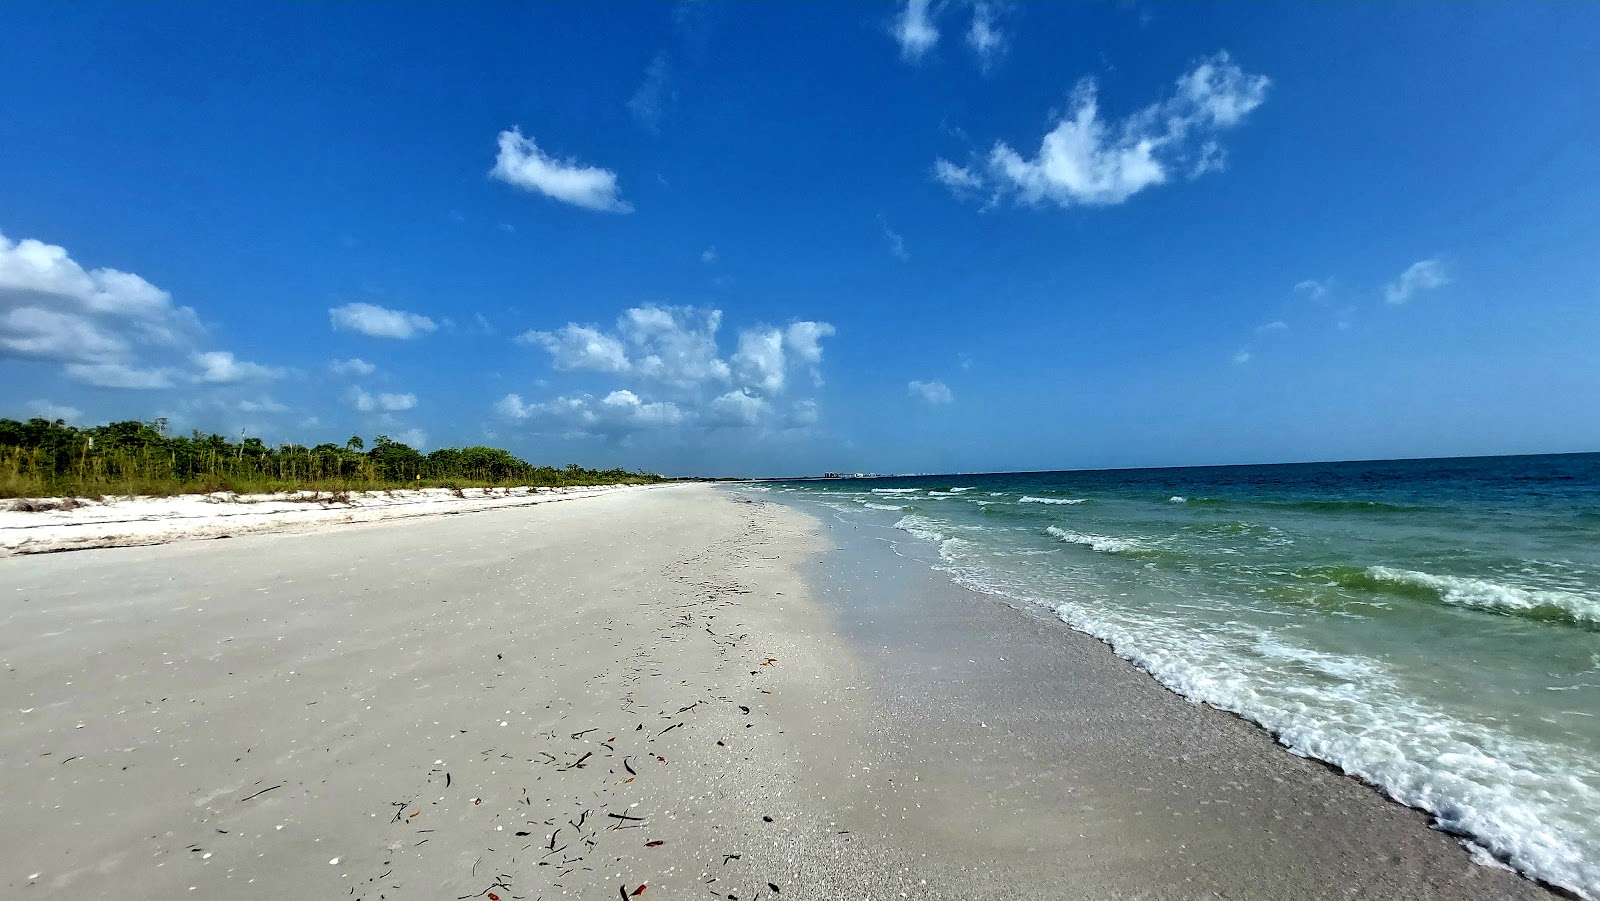 Photo de Bonita beach - endroit populaire parmi les connaisseurs de la détente